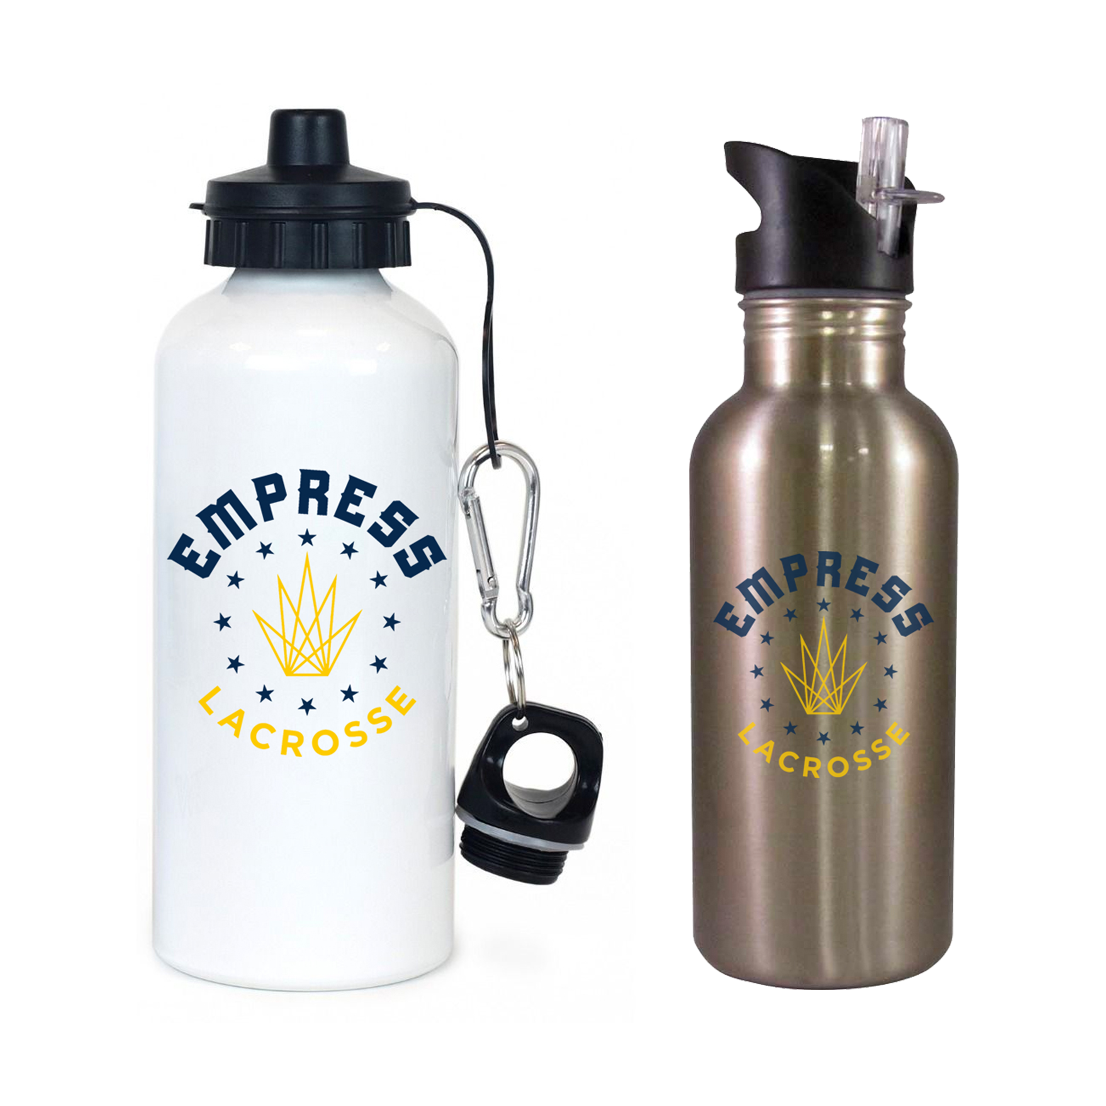 Empress Lacrosse Team Water Bottle